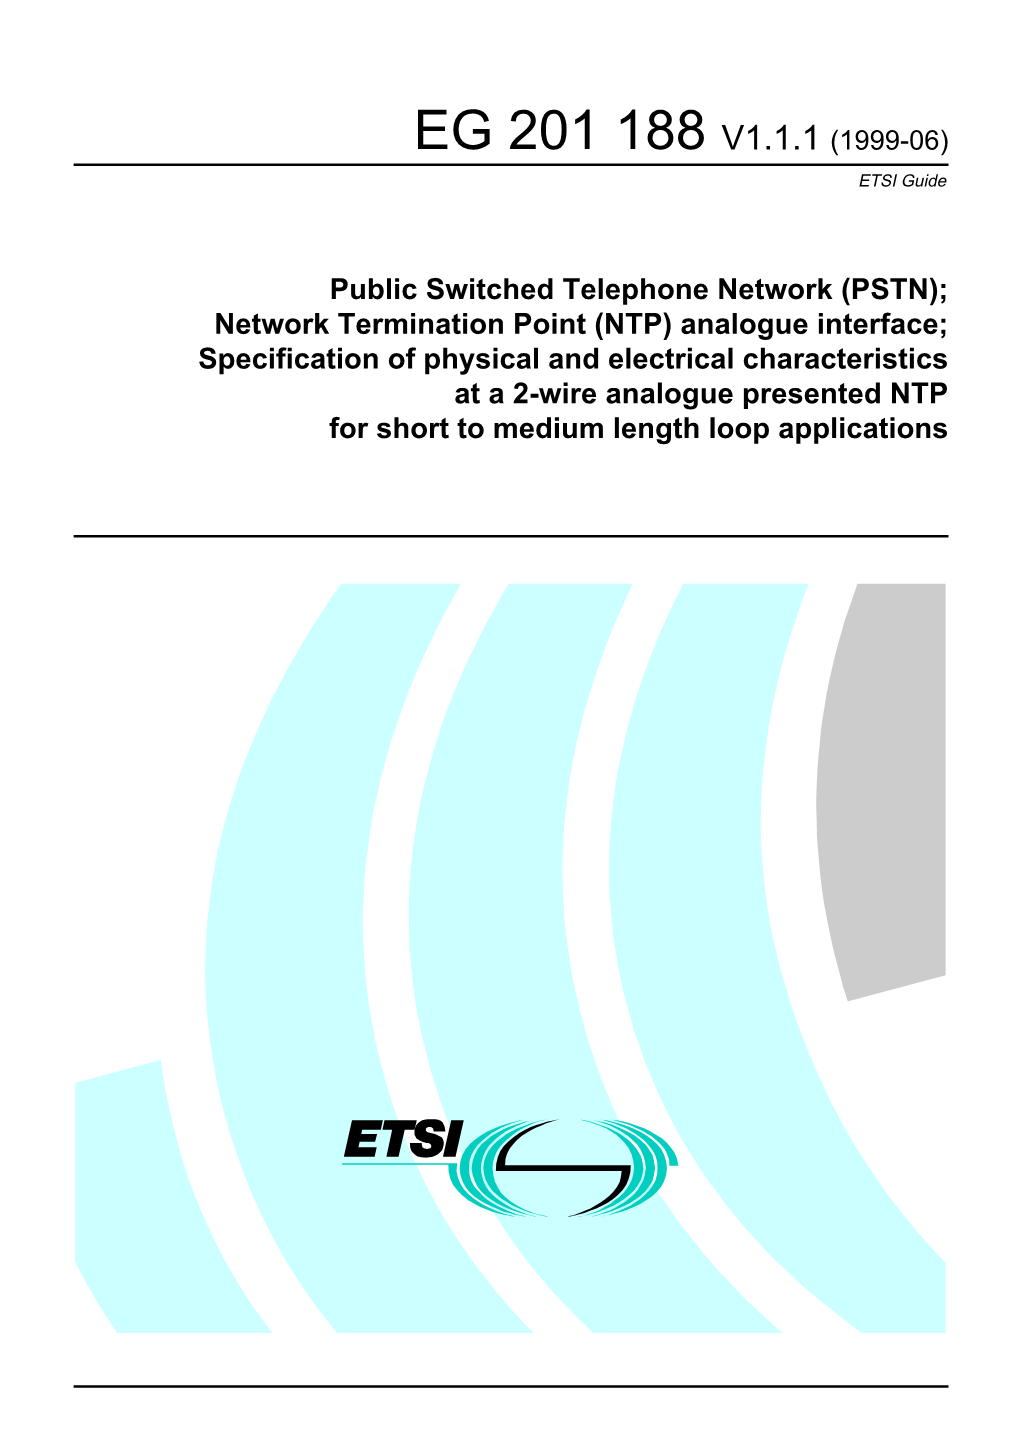 EG 201 188 V1.1.1 (1999-06) ETSI Guide